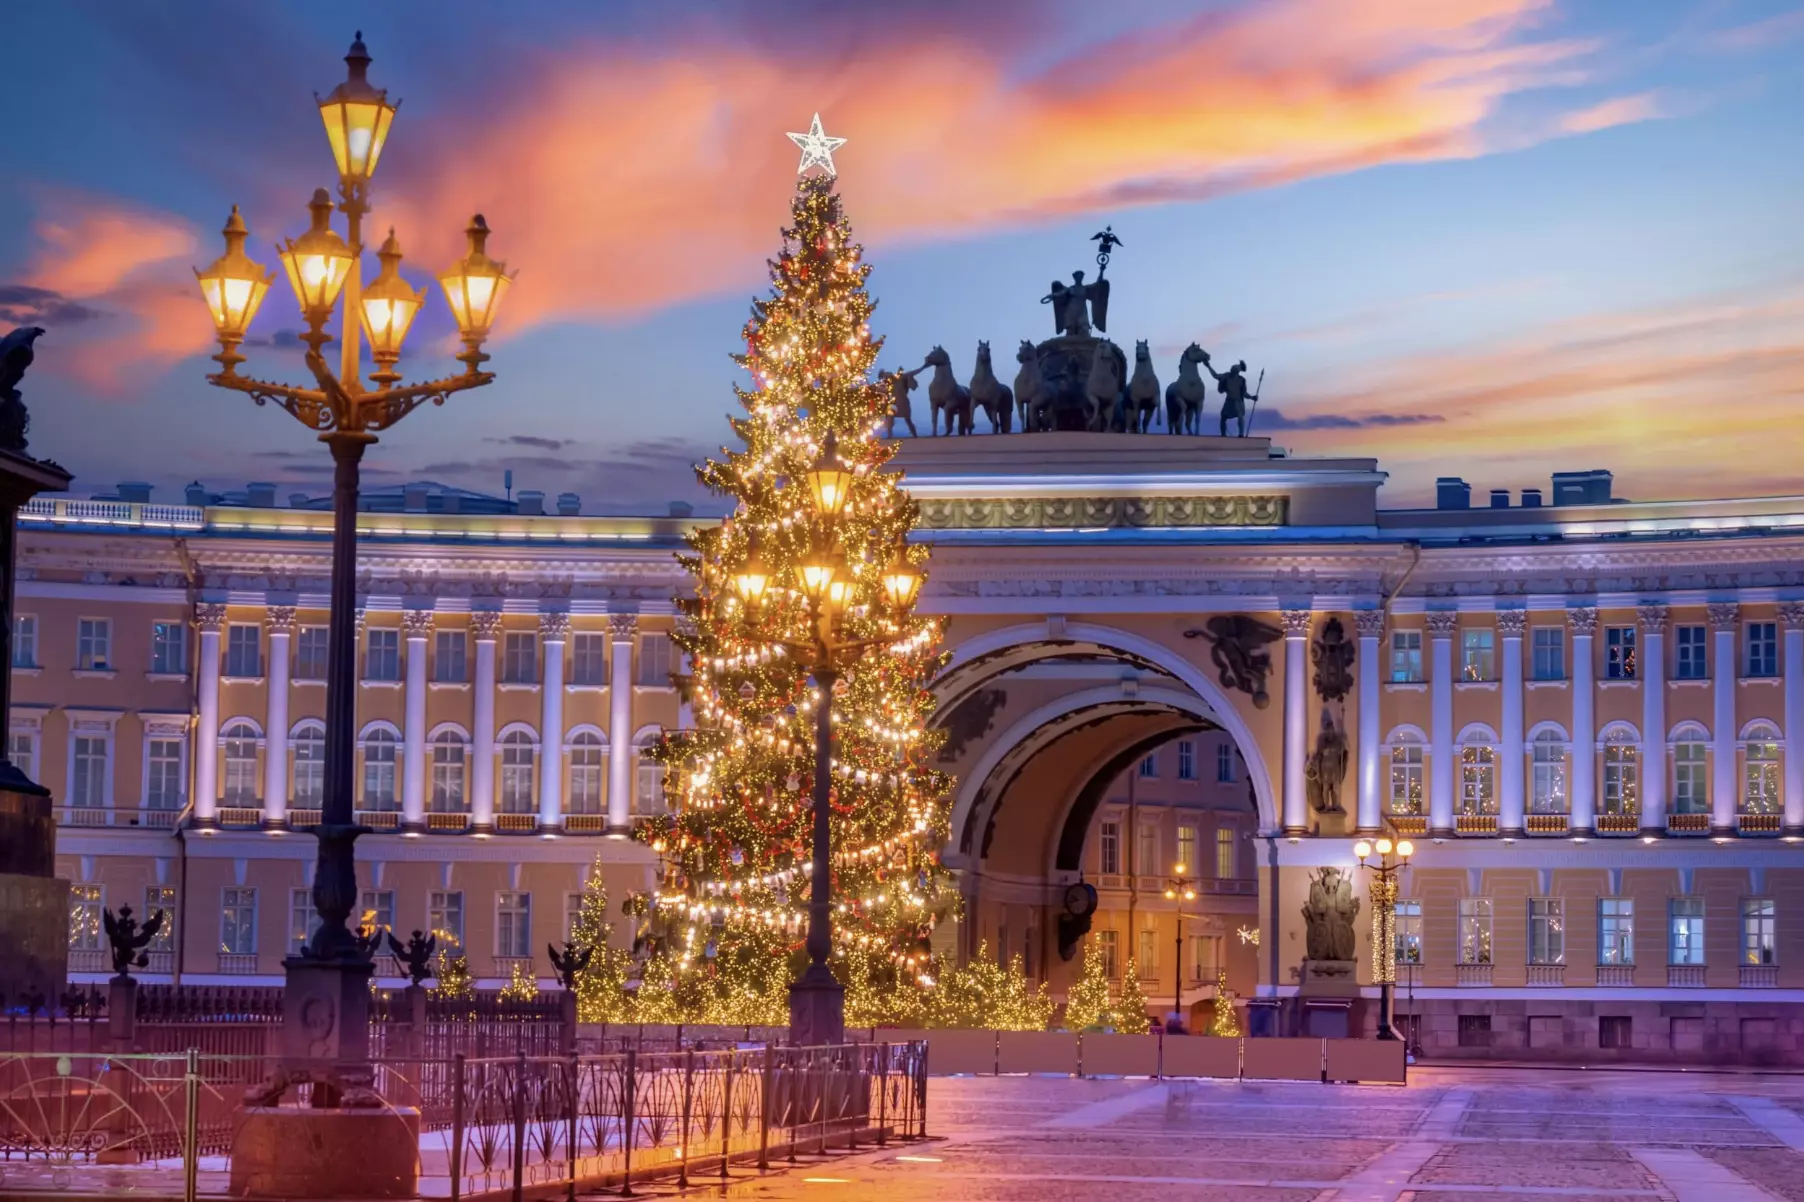 Портал Visit Petersburg составил топ-5 мест для семейного отдыха в Санкт-Петербурге